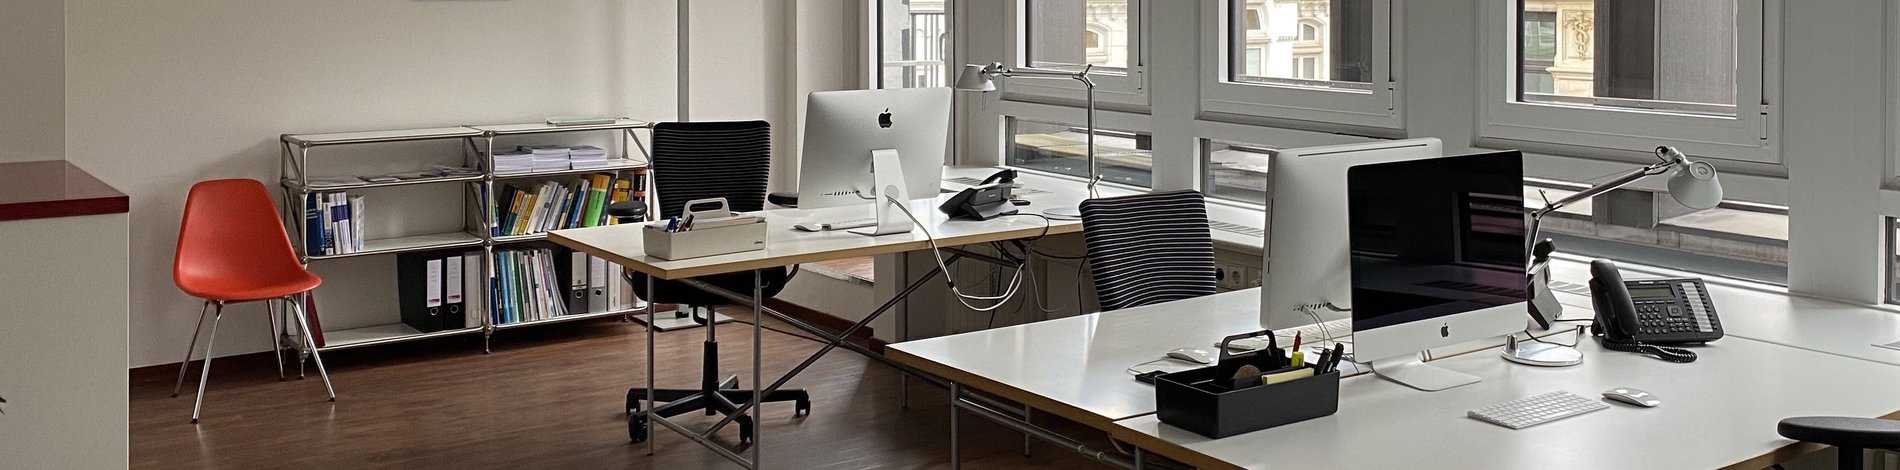 Blick in das Büro von we care communications: zwei Schreibtische, Stühle und ein Regal